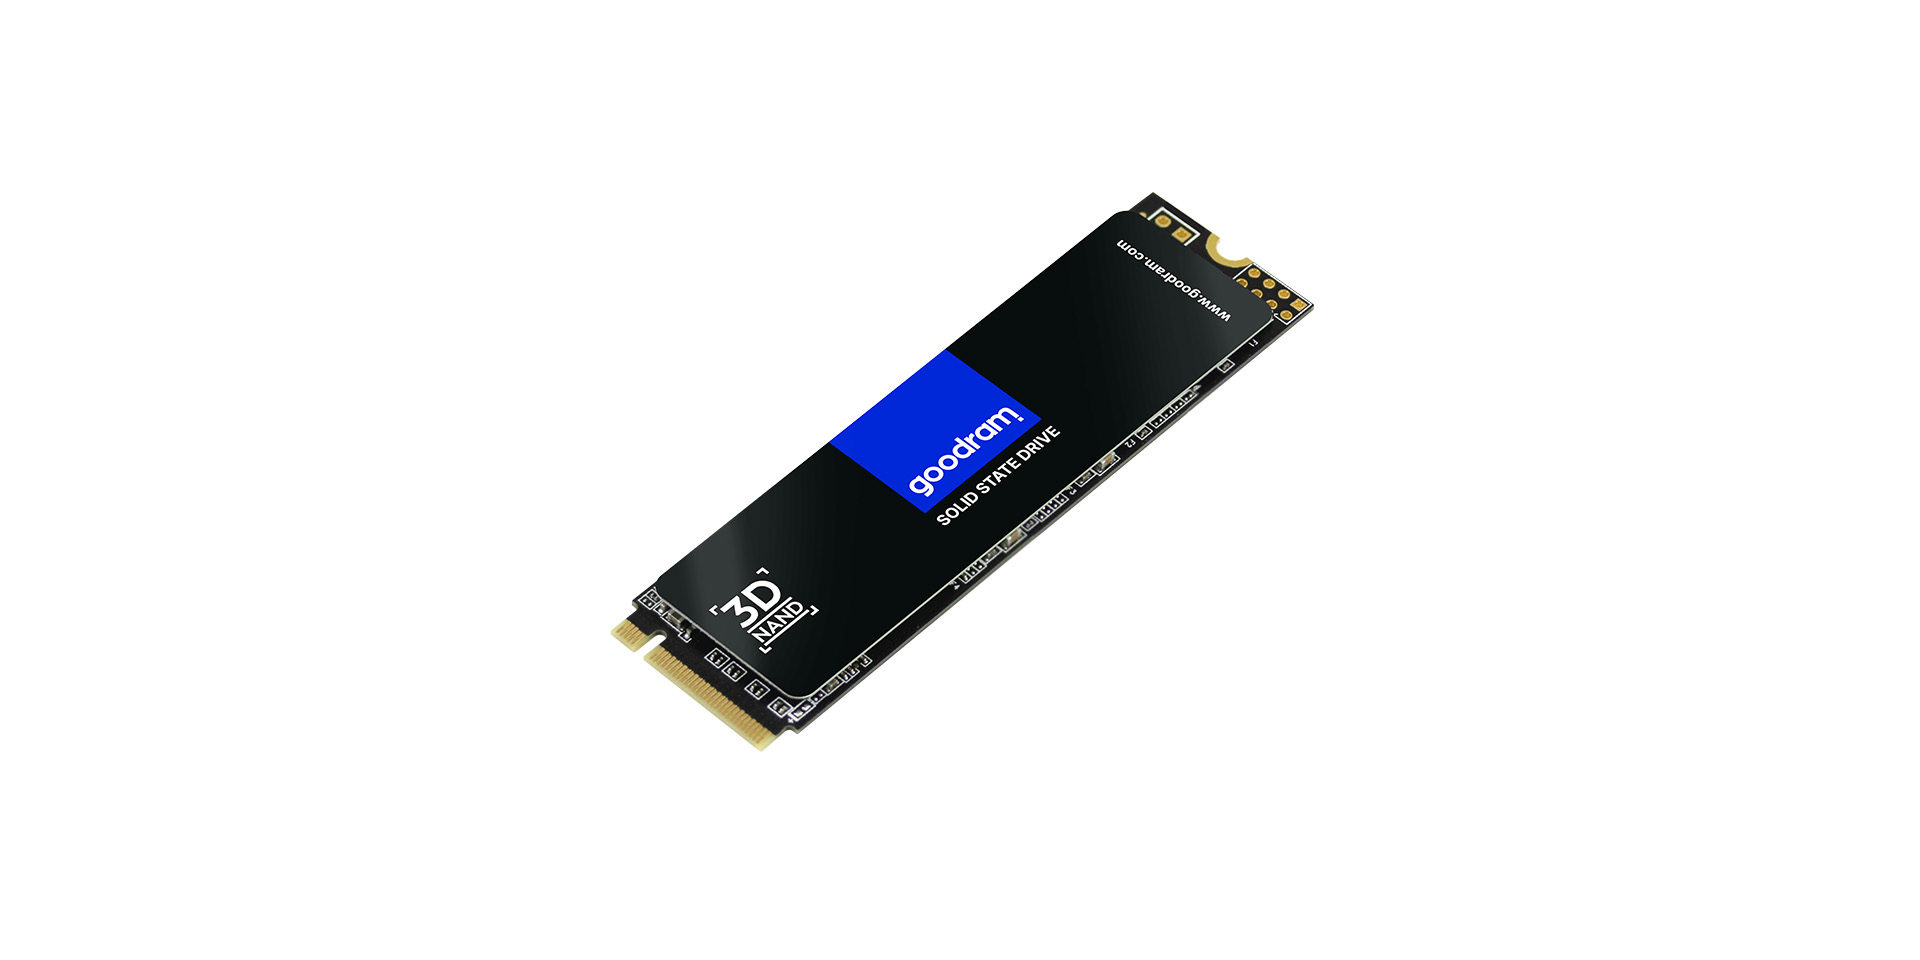 Goodram PX500 SSD, PCIe 3x4, 512 GB, M.2 2280, NVMe, RETAIL